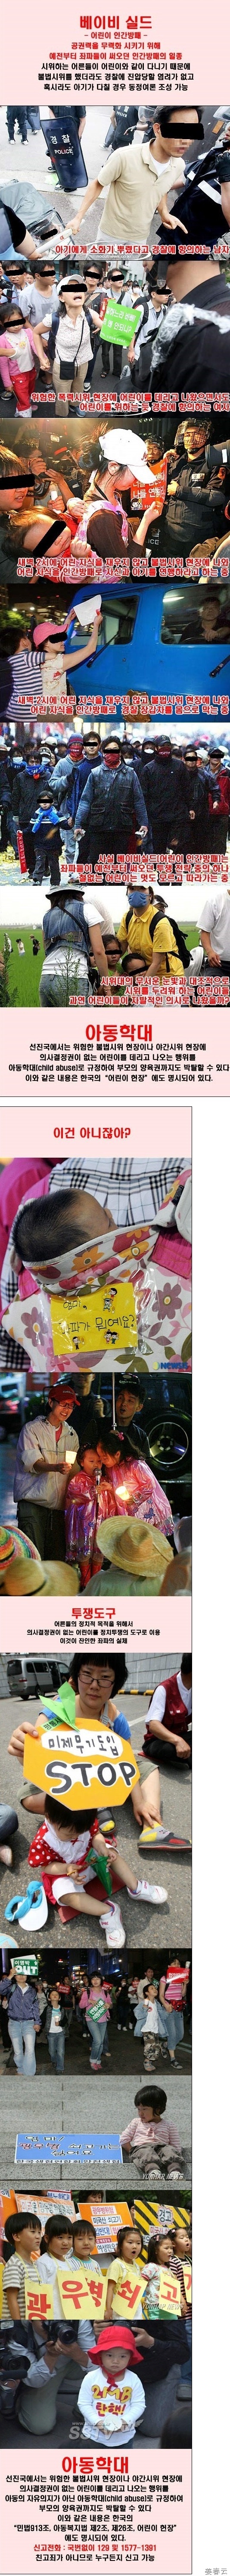 투쟁의 도구로 활용되는 한국 어린이들 &ndash; 이제는 이들의 인권도 생각해야 해